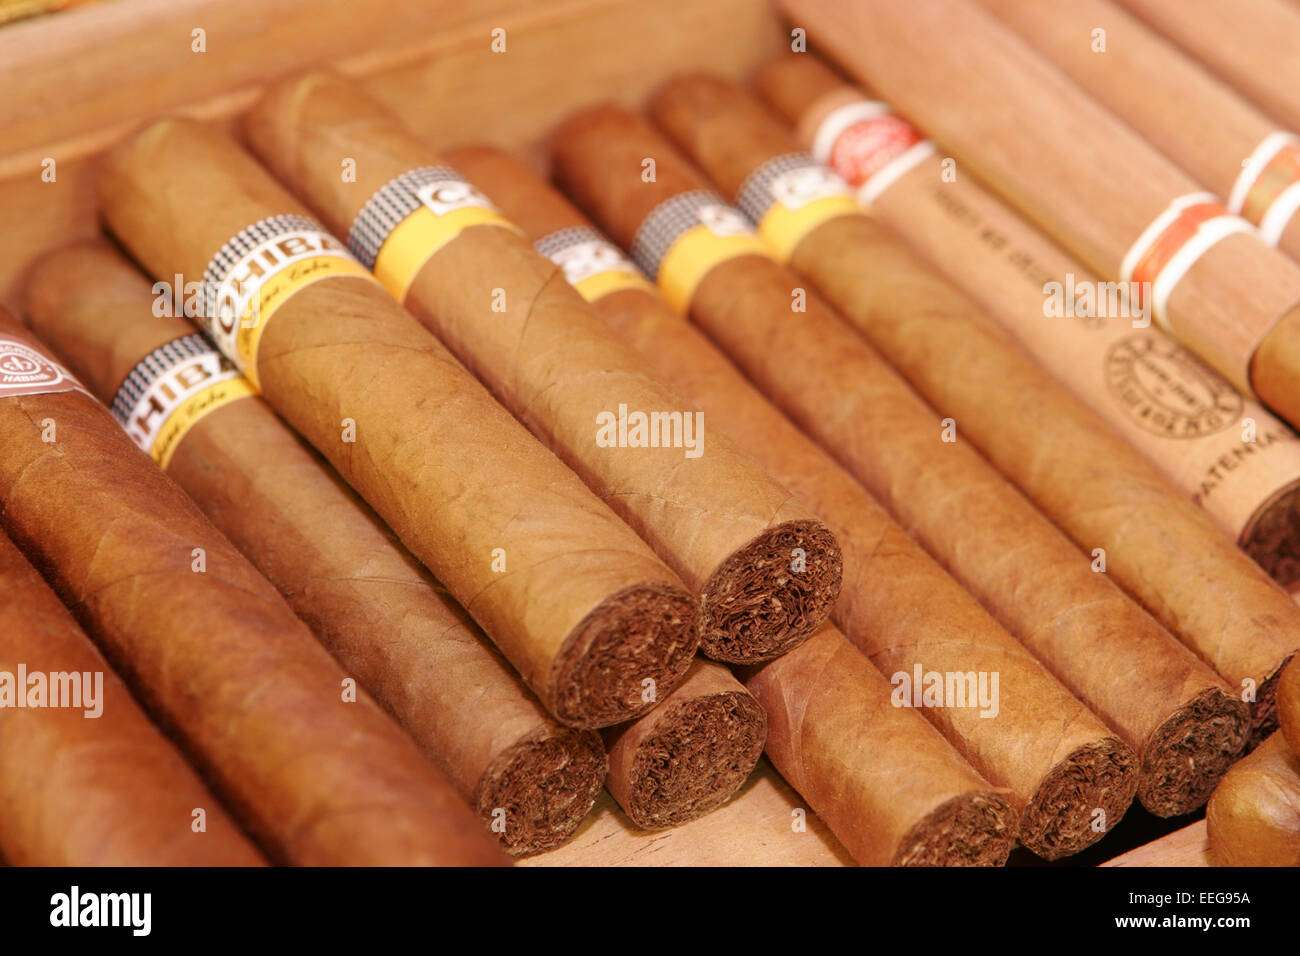 Zigarren, Rauchen, Genussmittel, Genuss, Sucht, Luxus, Tabak, Cohiba, Kubanische, Kiste, Zigarrenkiste, Zigarre, Droge, Drogen, Stock Photo